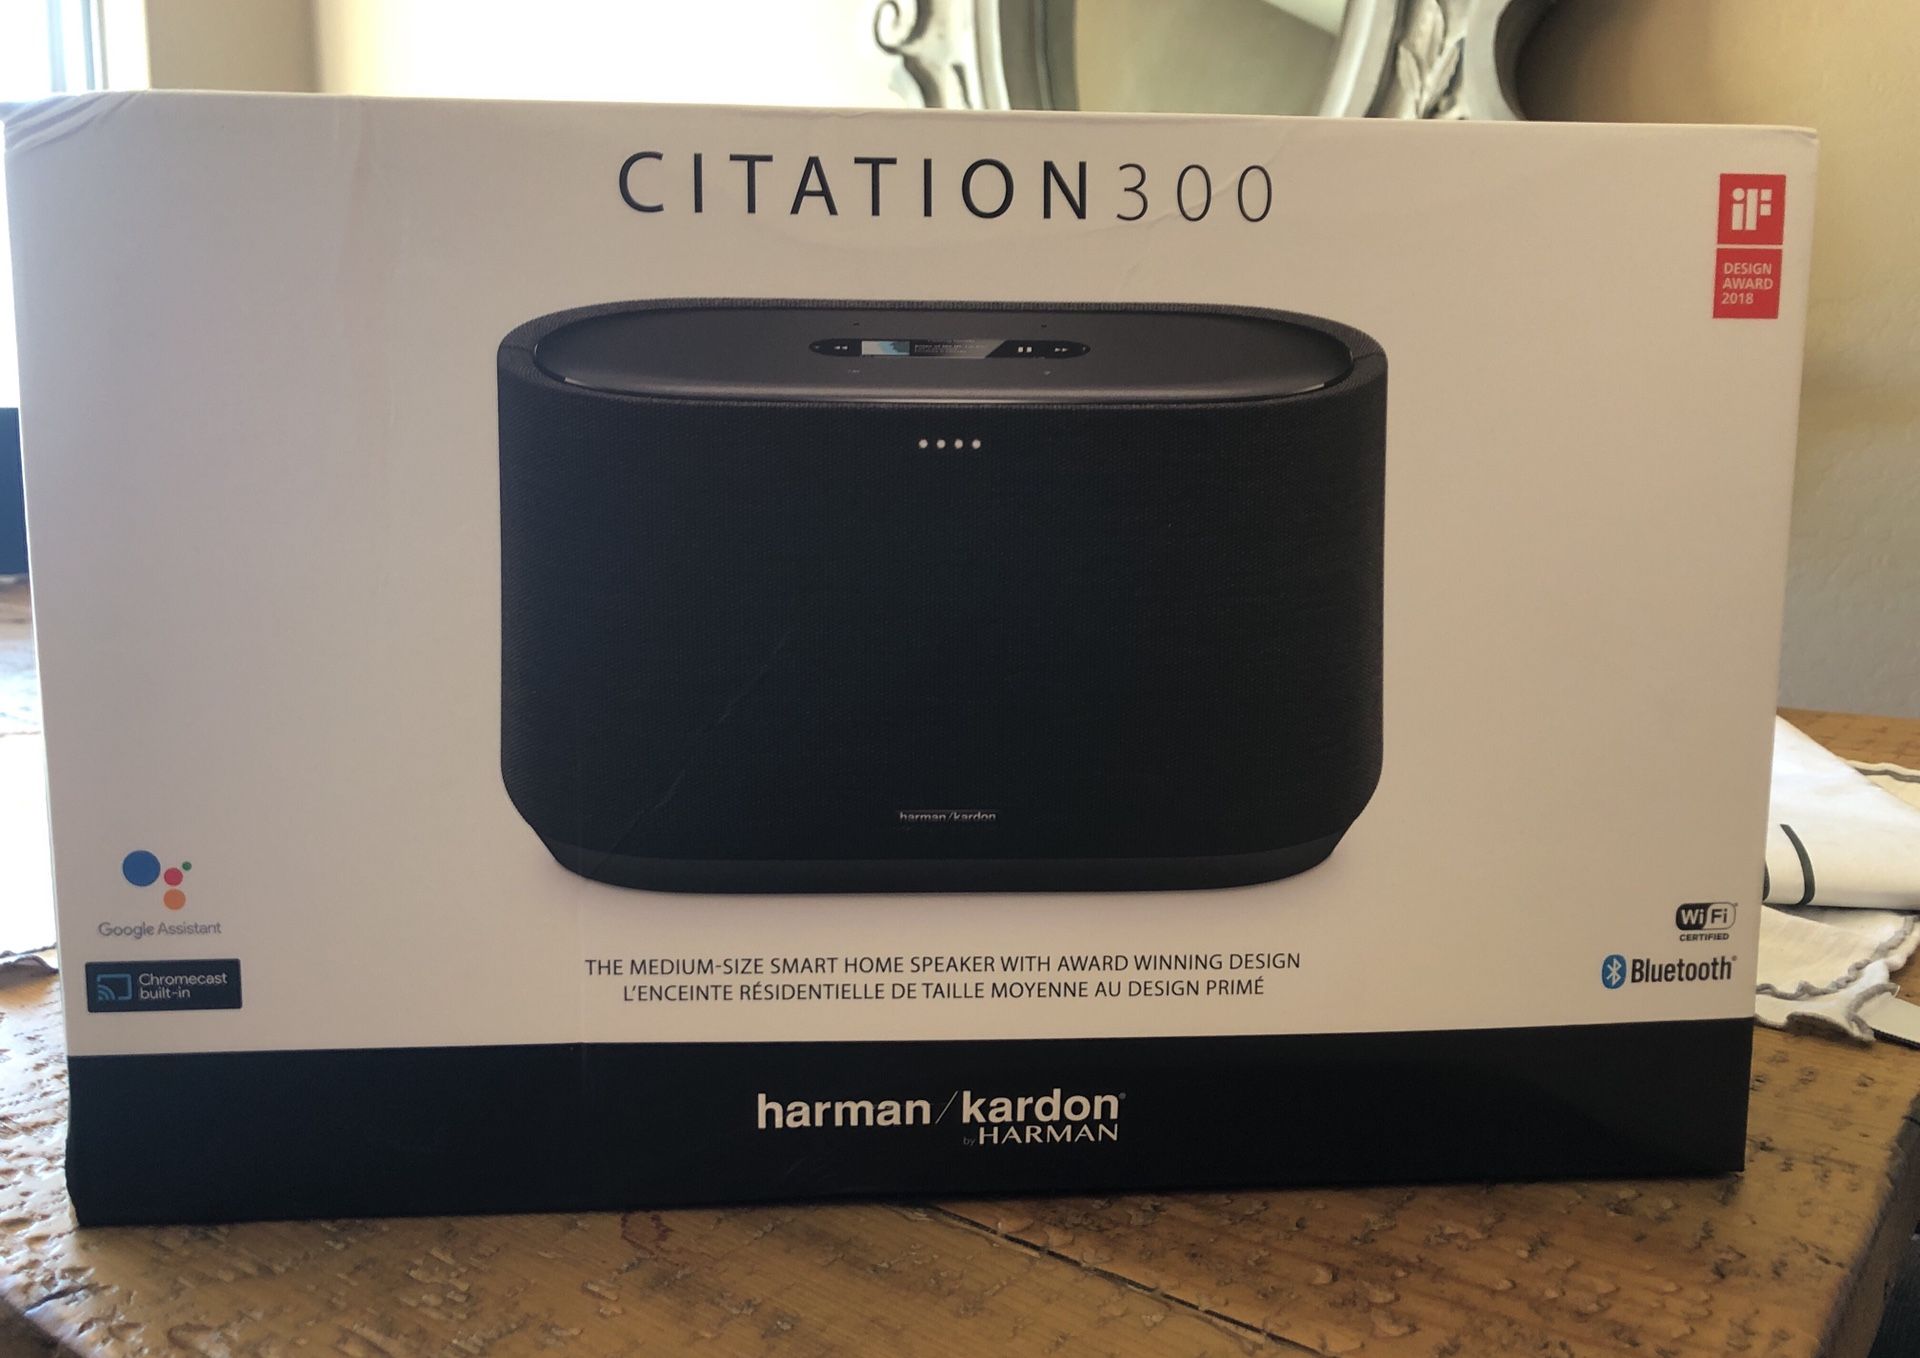 Brand New Harman Kardon Citation 300 Smart Speaker